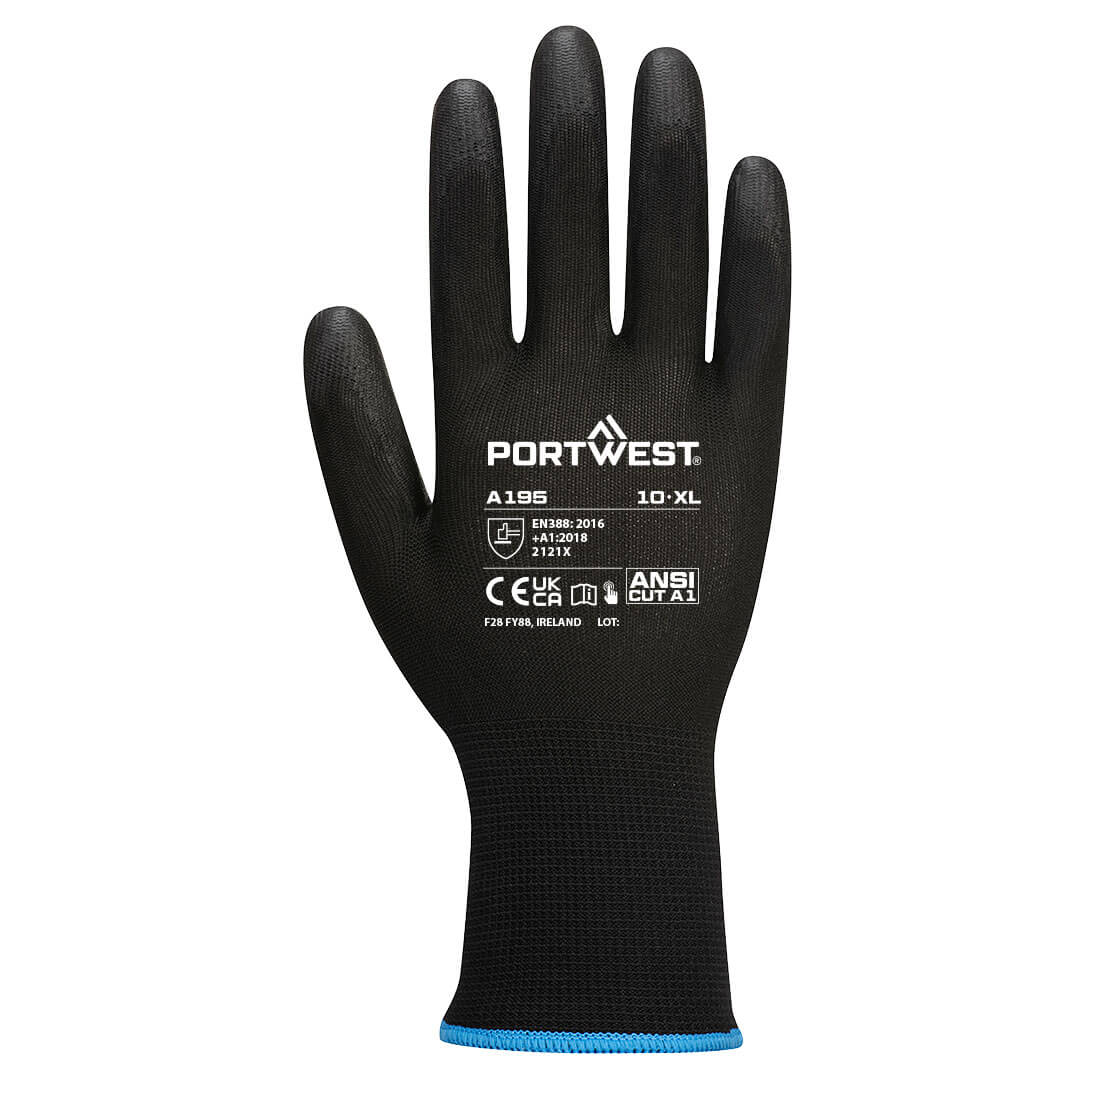 Dotykové rukavice - PU Barva: černá, Velikost: L